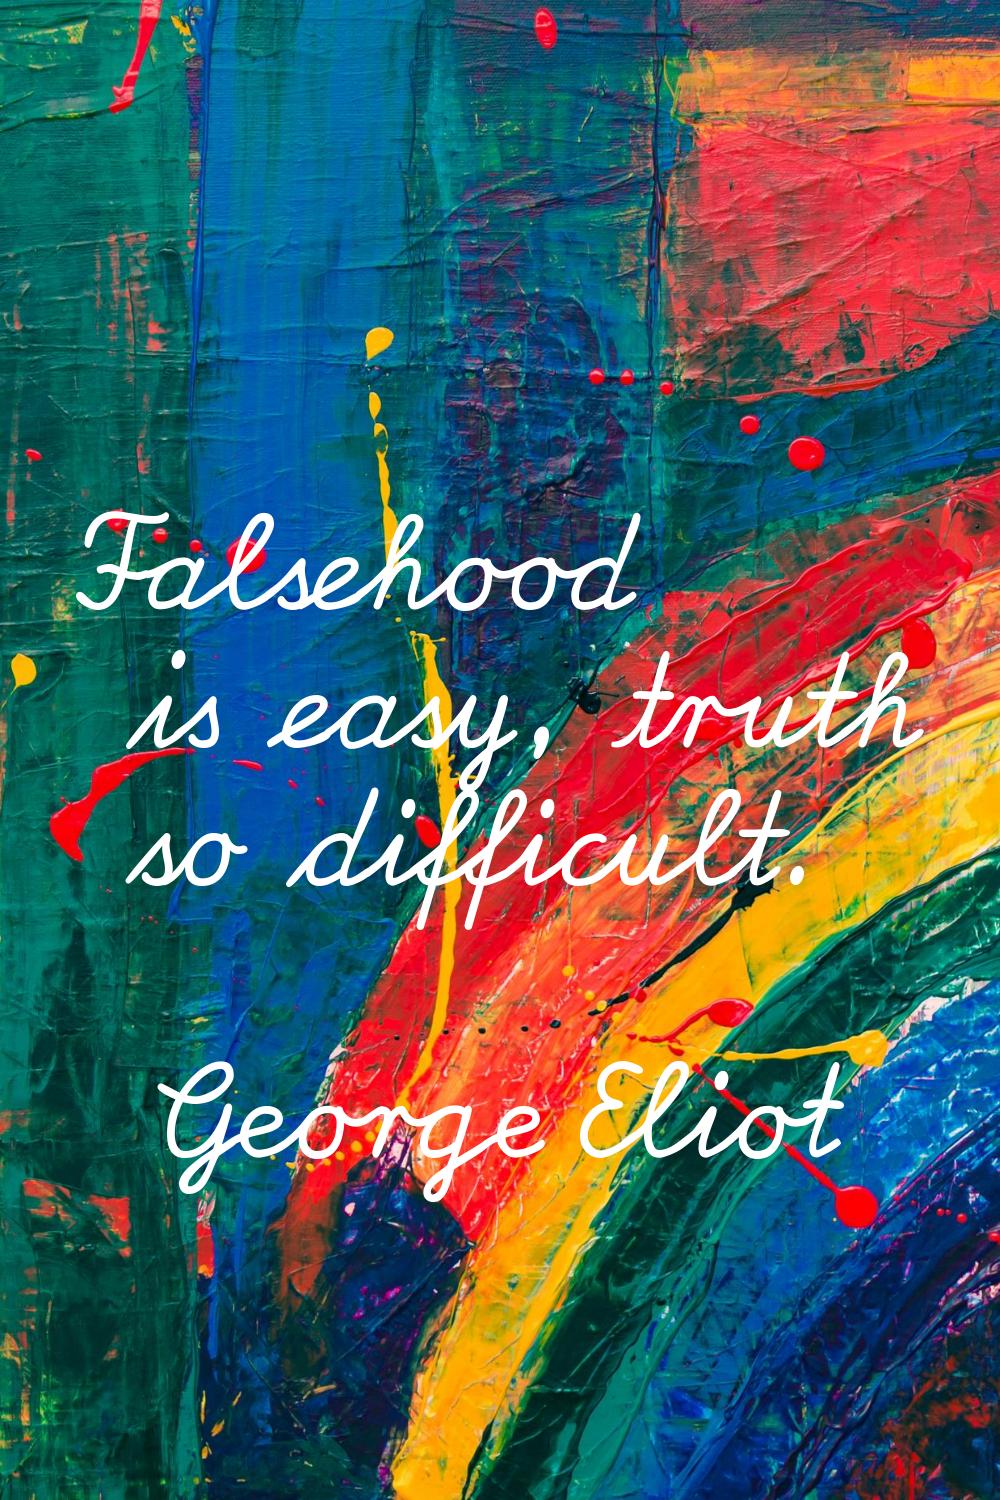 Falsehood is easy, truth so difficult.